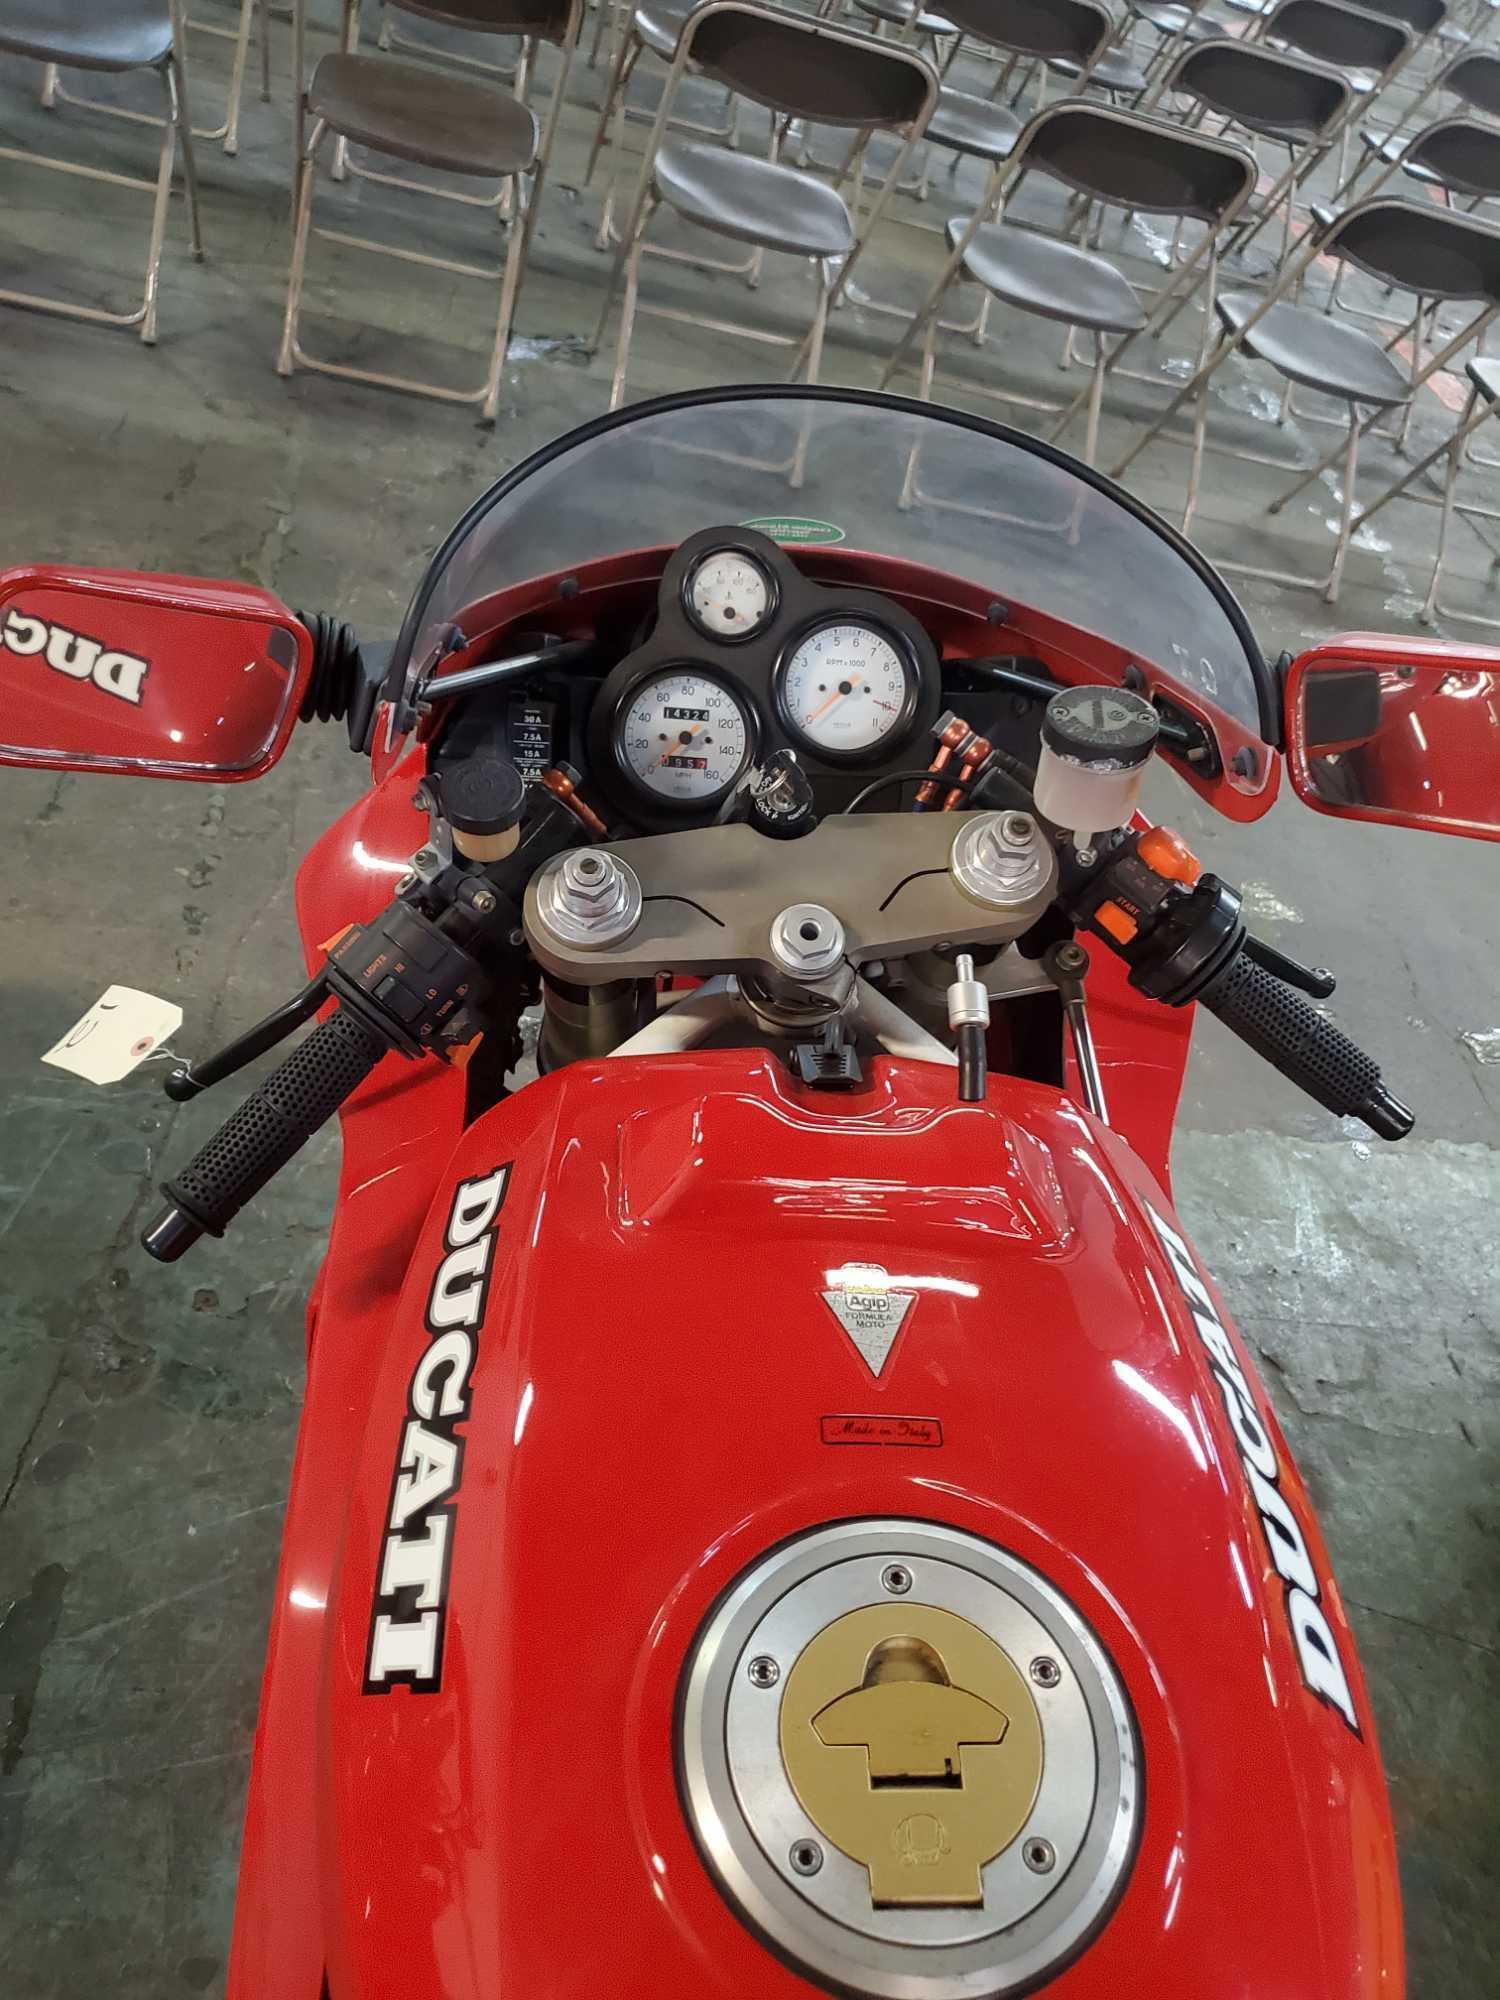 1992 Ducati 851